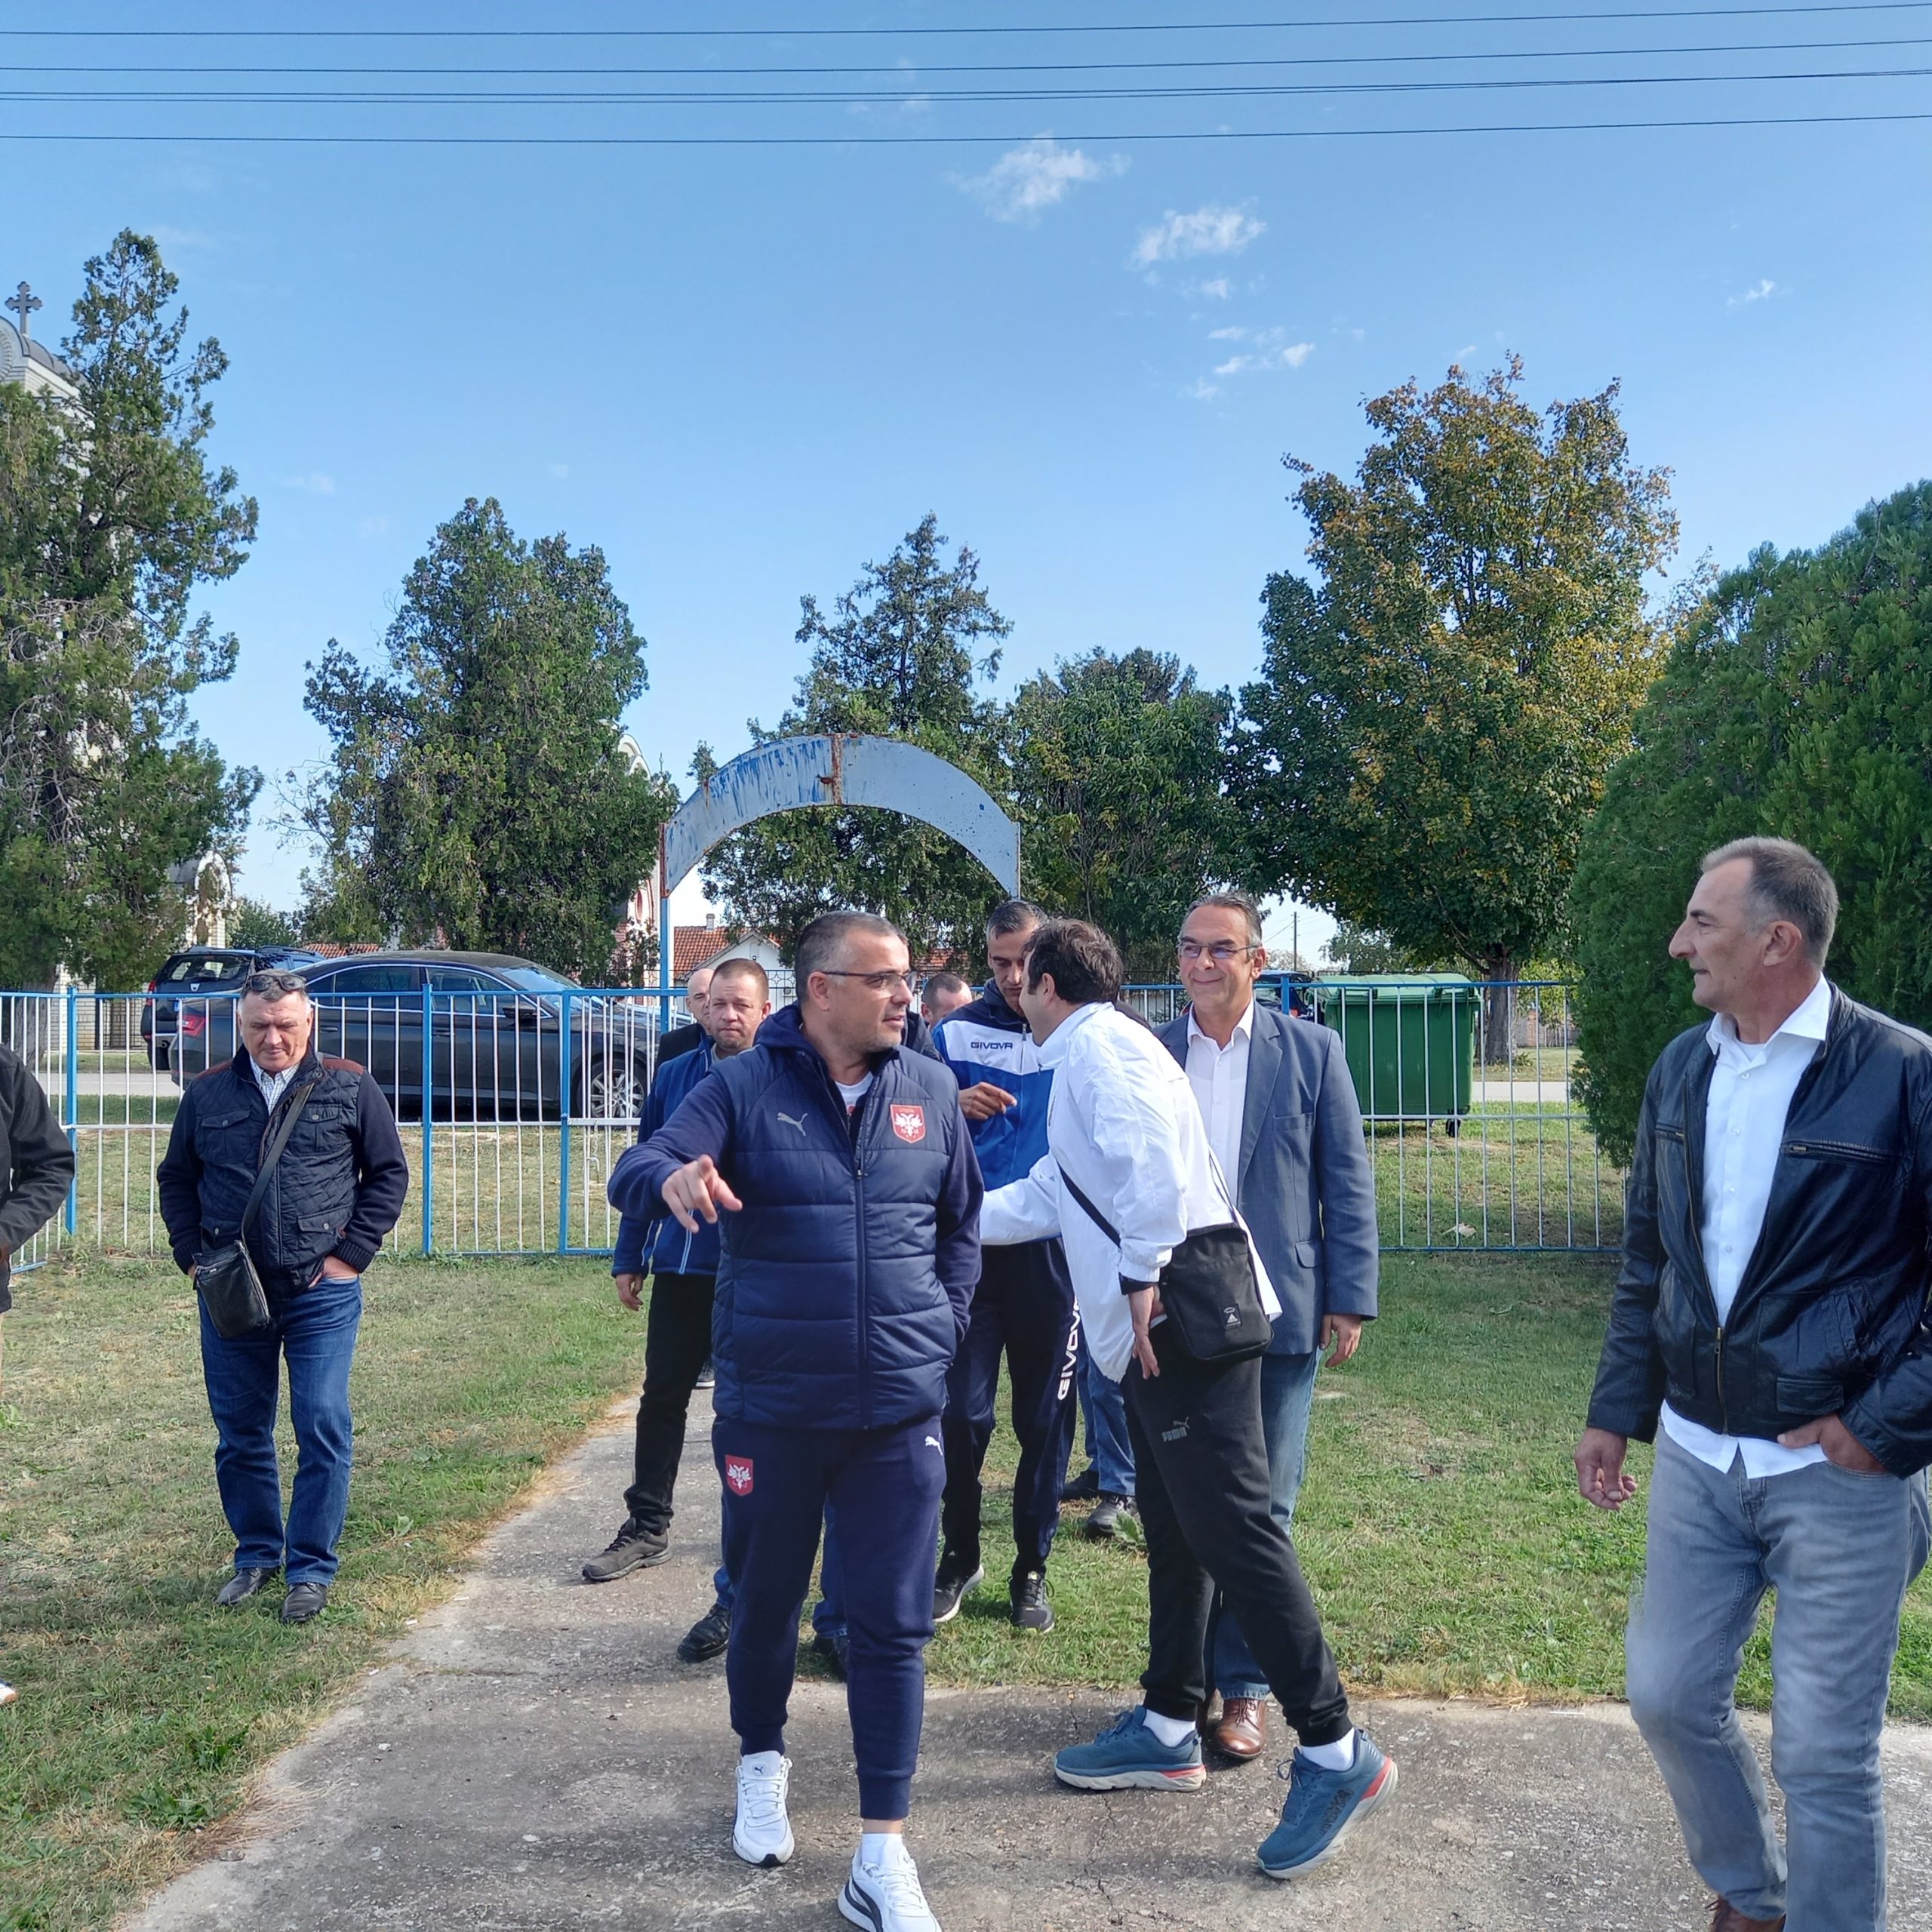 Potpredsednik Fudbalskog saveza Srbije posetio FK “Tomislavci” i FK “Solunac”